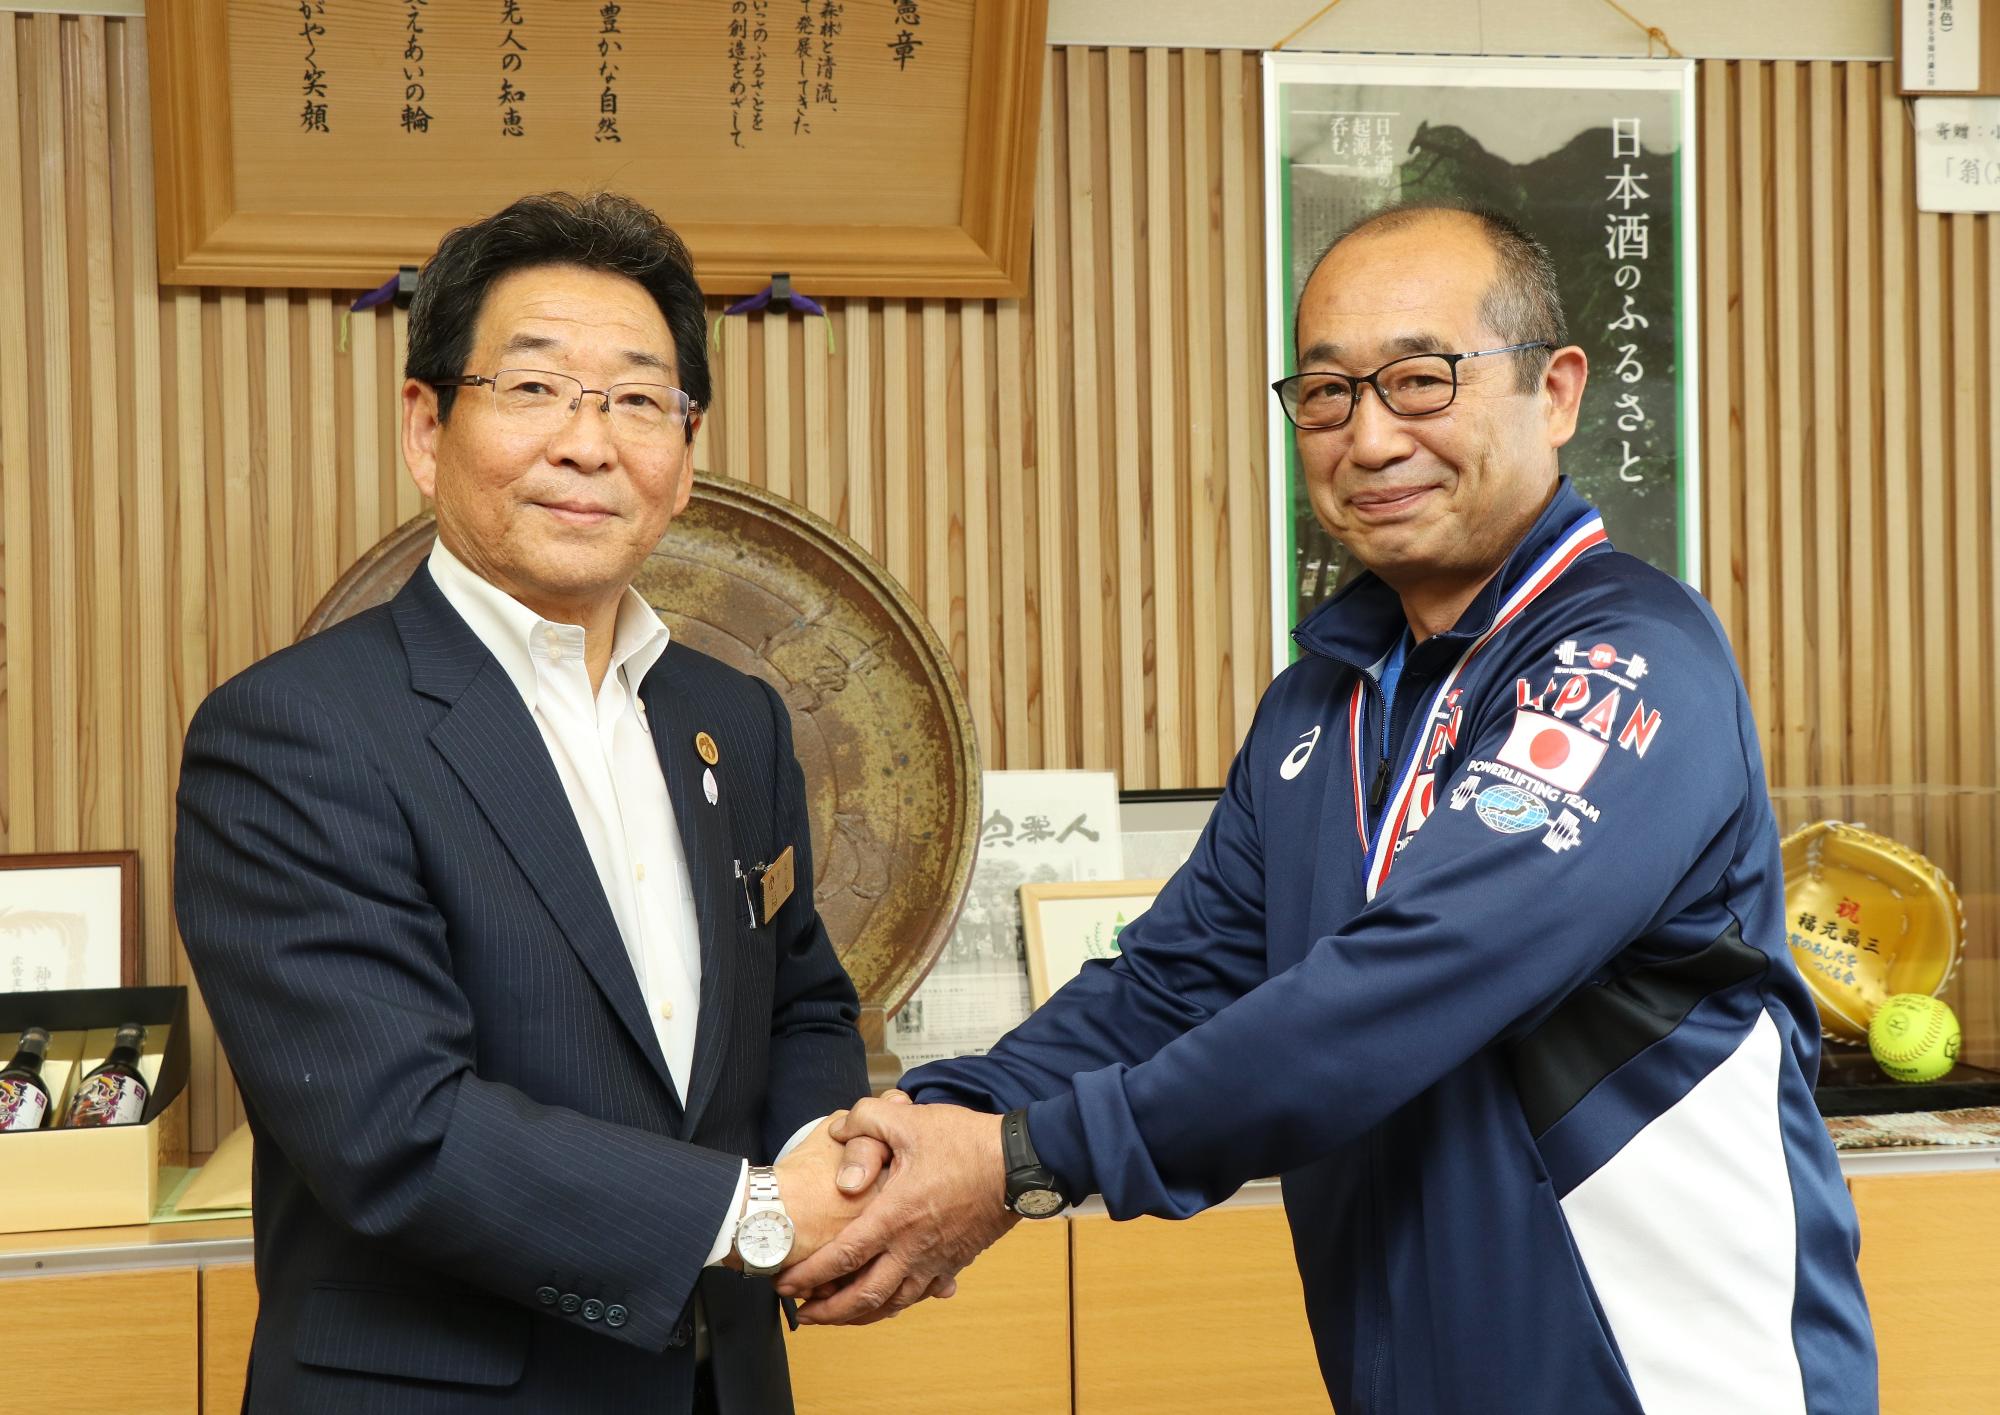 紺のジャージを着たの伊藤さんが市長と握手をしている写真